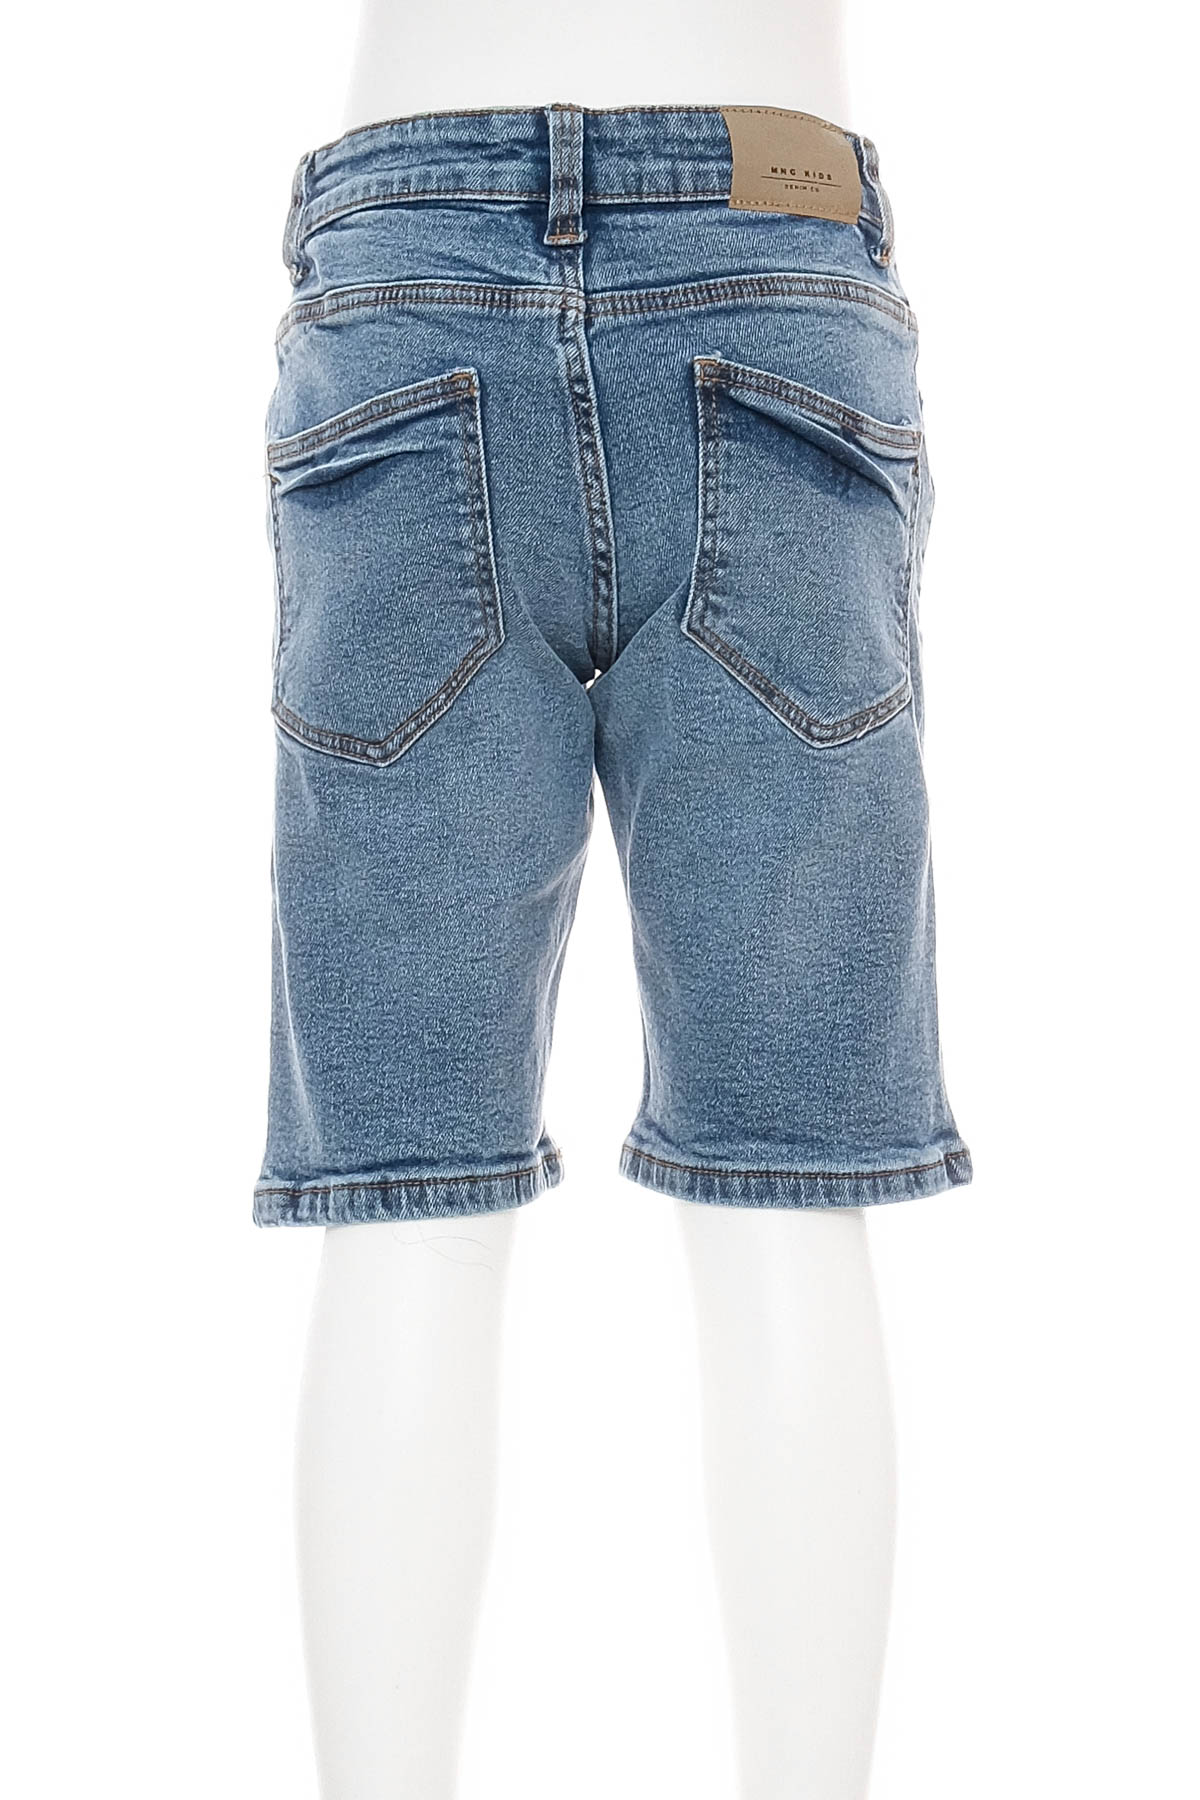 Pantaloni scurți pentru băiat - MANGO KIDS - 1